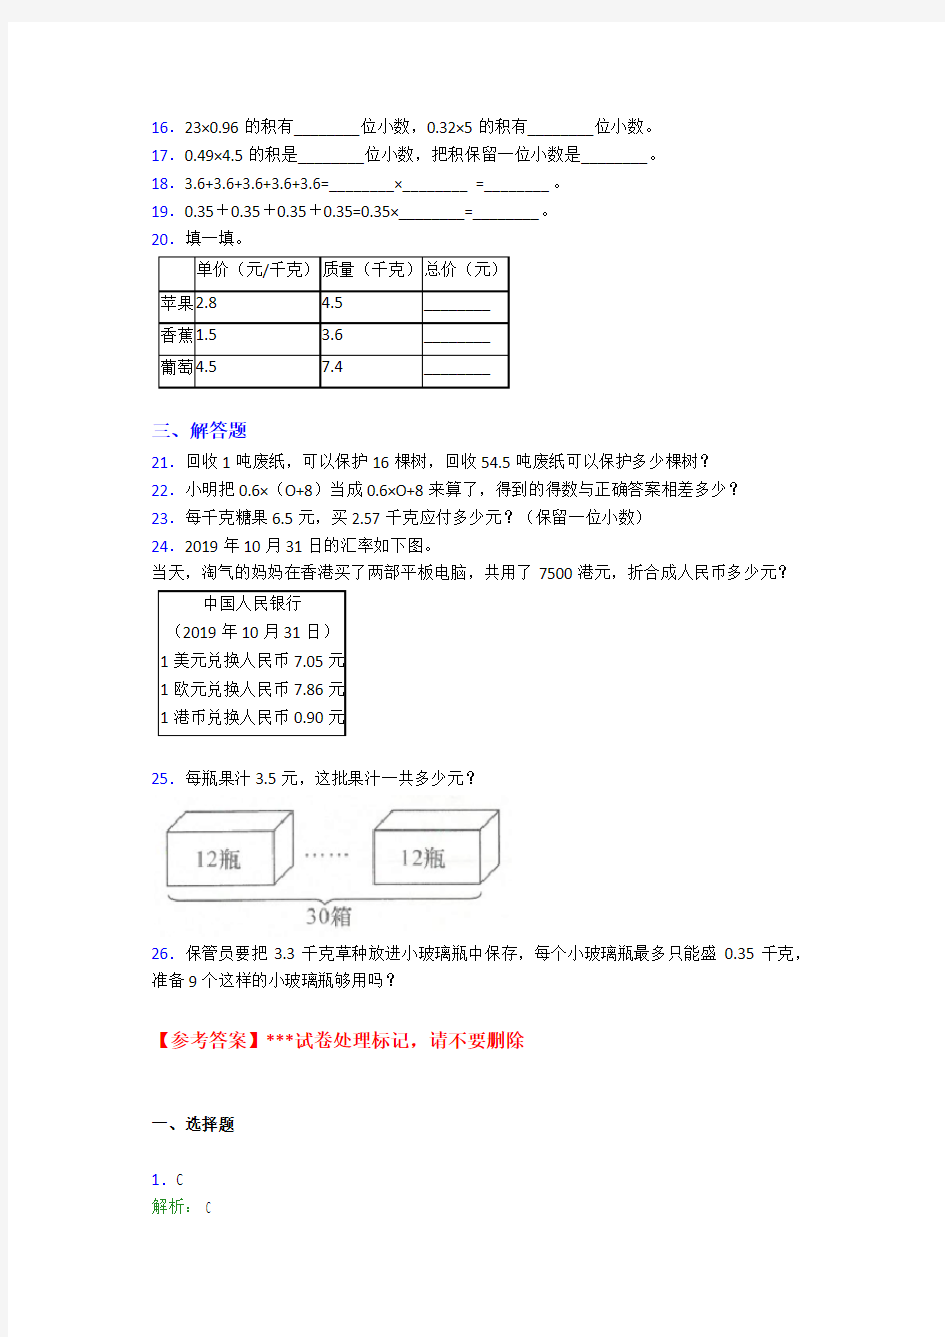 (必考题)小学数学五年级上册第一单元小数乘法测试题(含答案解析)